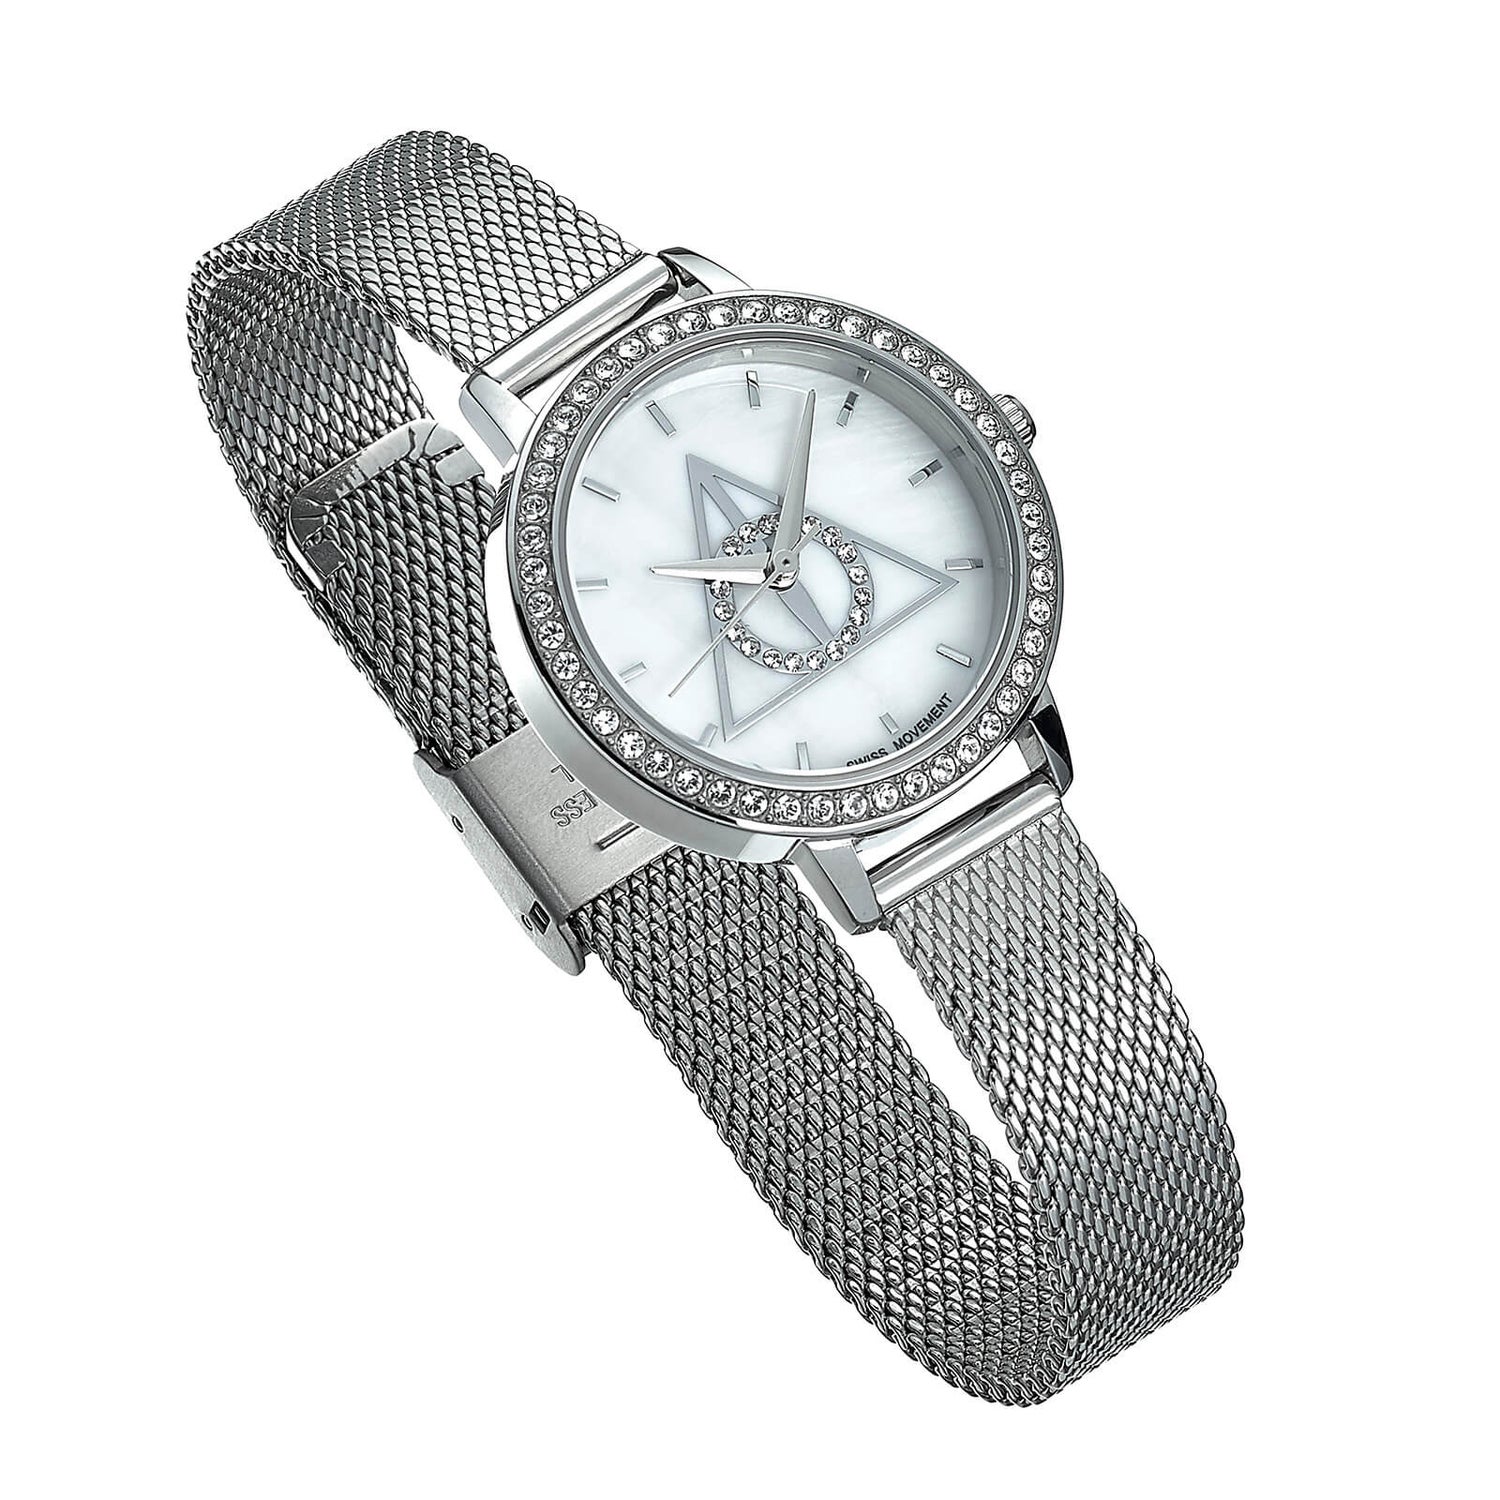 Harry Potter zilver Deathly Hallows horloge versierd met Swarovski kristallen